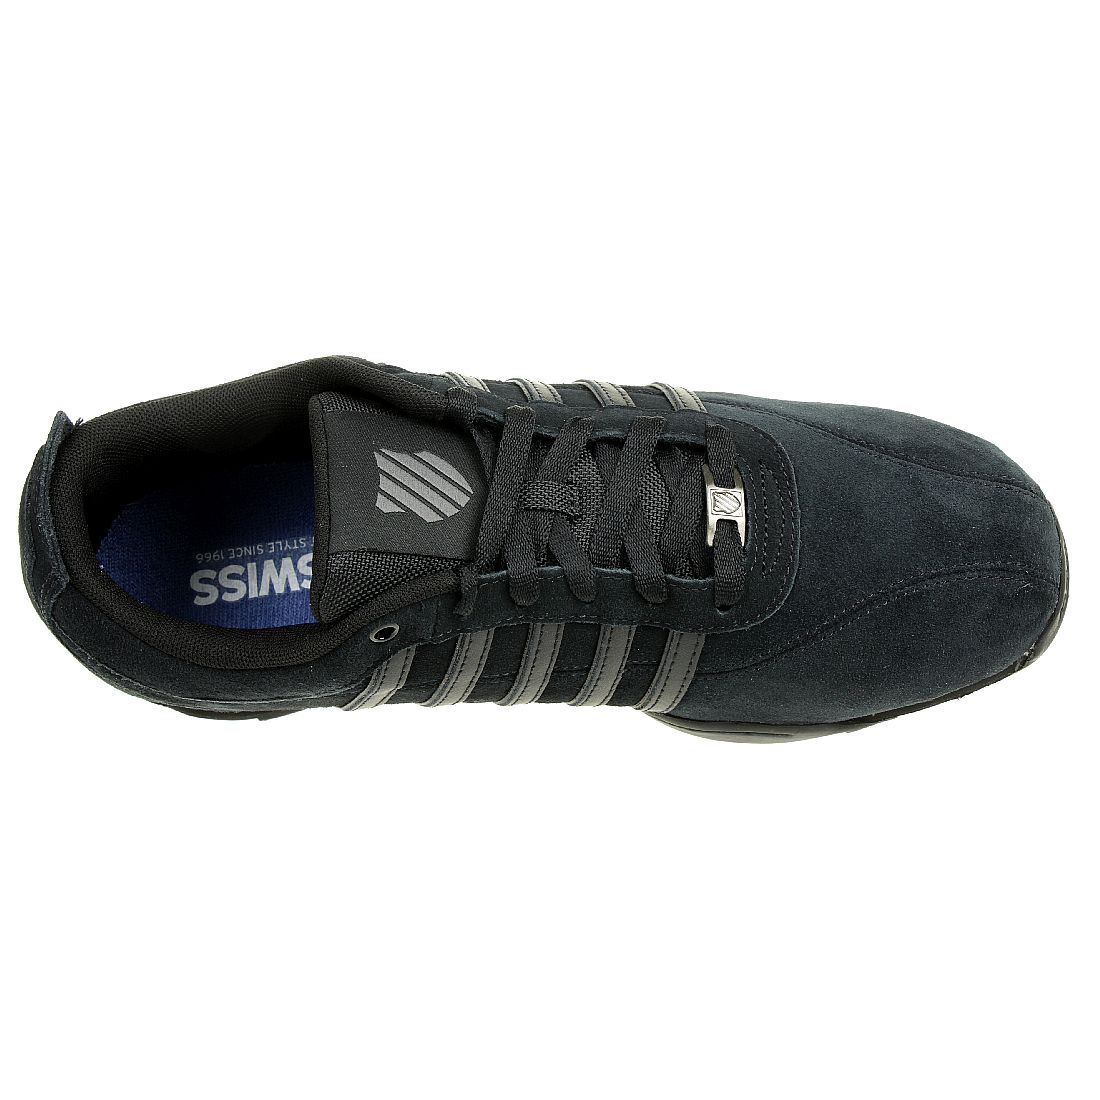 K-SWISS Arvee 1.5 SDE Schuhe Sneaker schwarz 03278-001-M